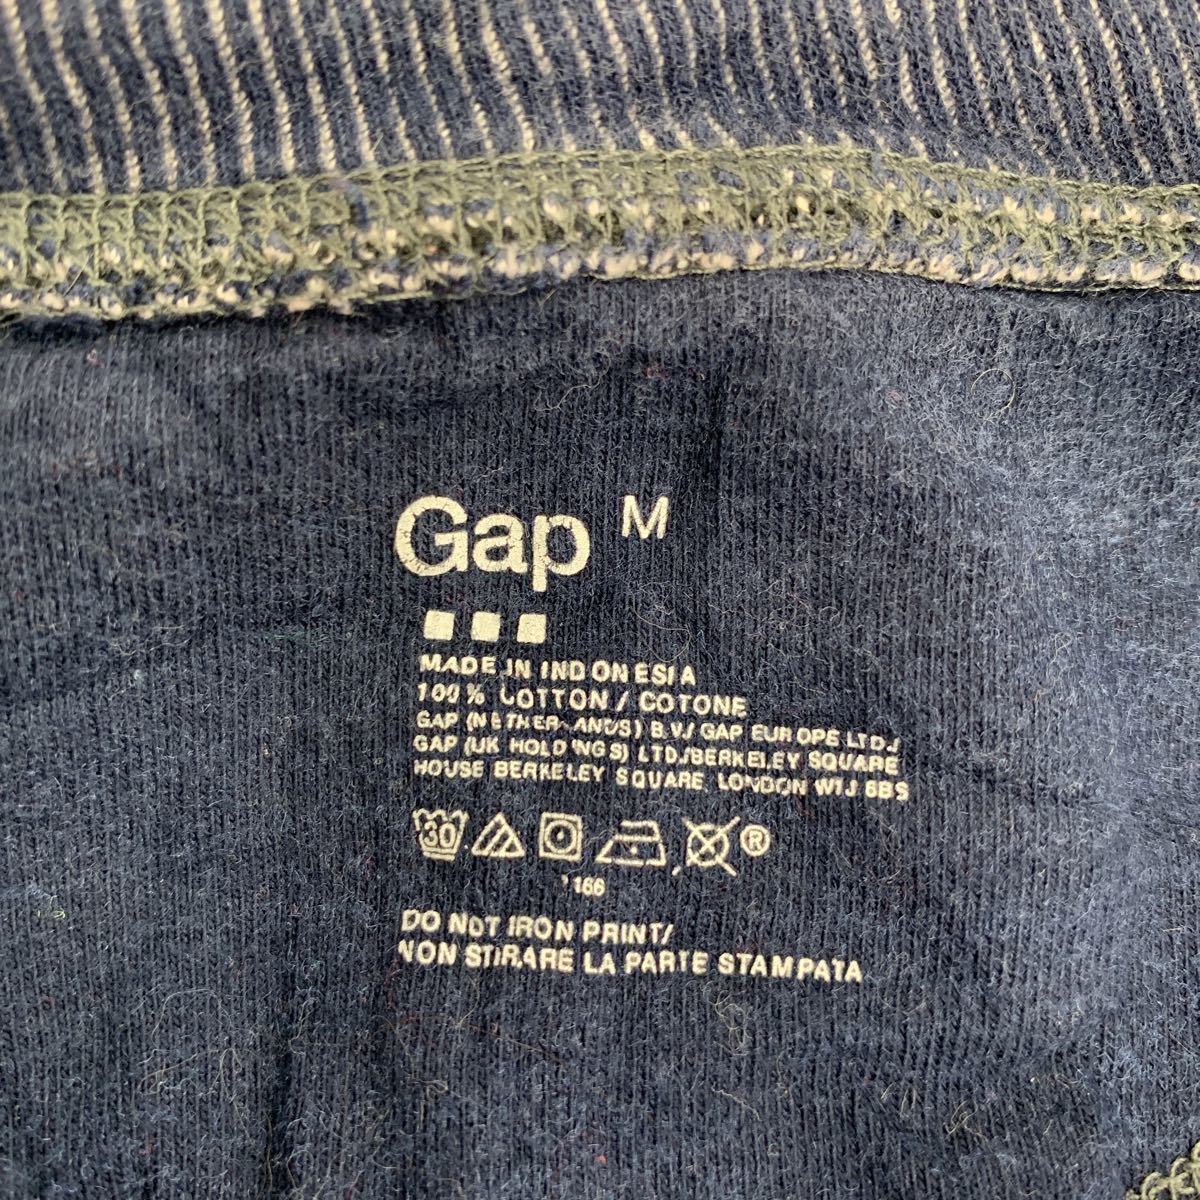 Gap ハーフボタン ロングTシャツ Mサイズ ギャップ ネイビー 古着卸 アメリカ仕入 t2202-4225_画像7